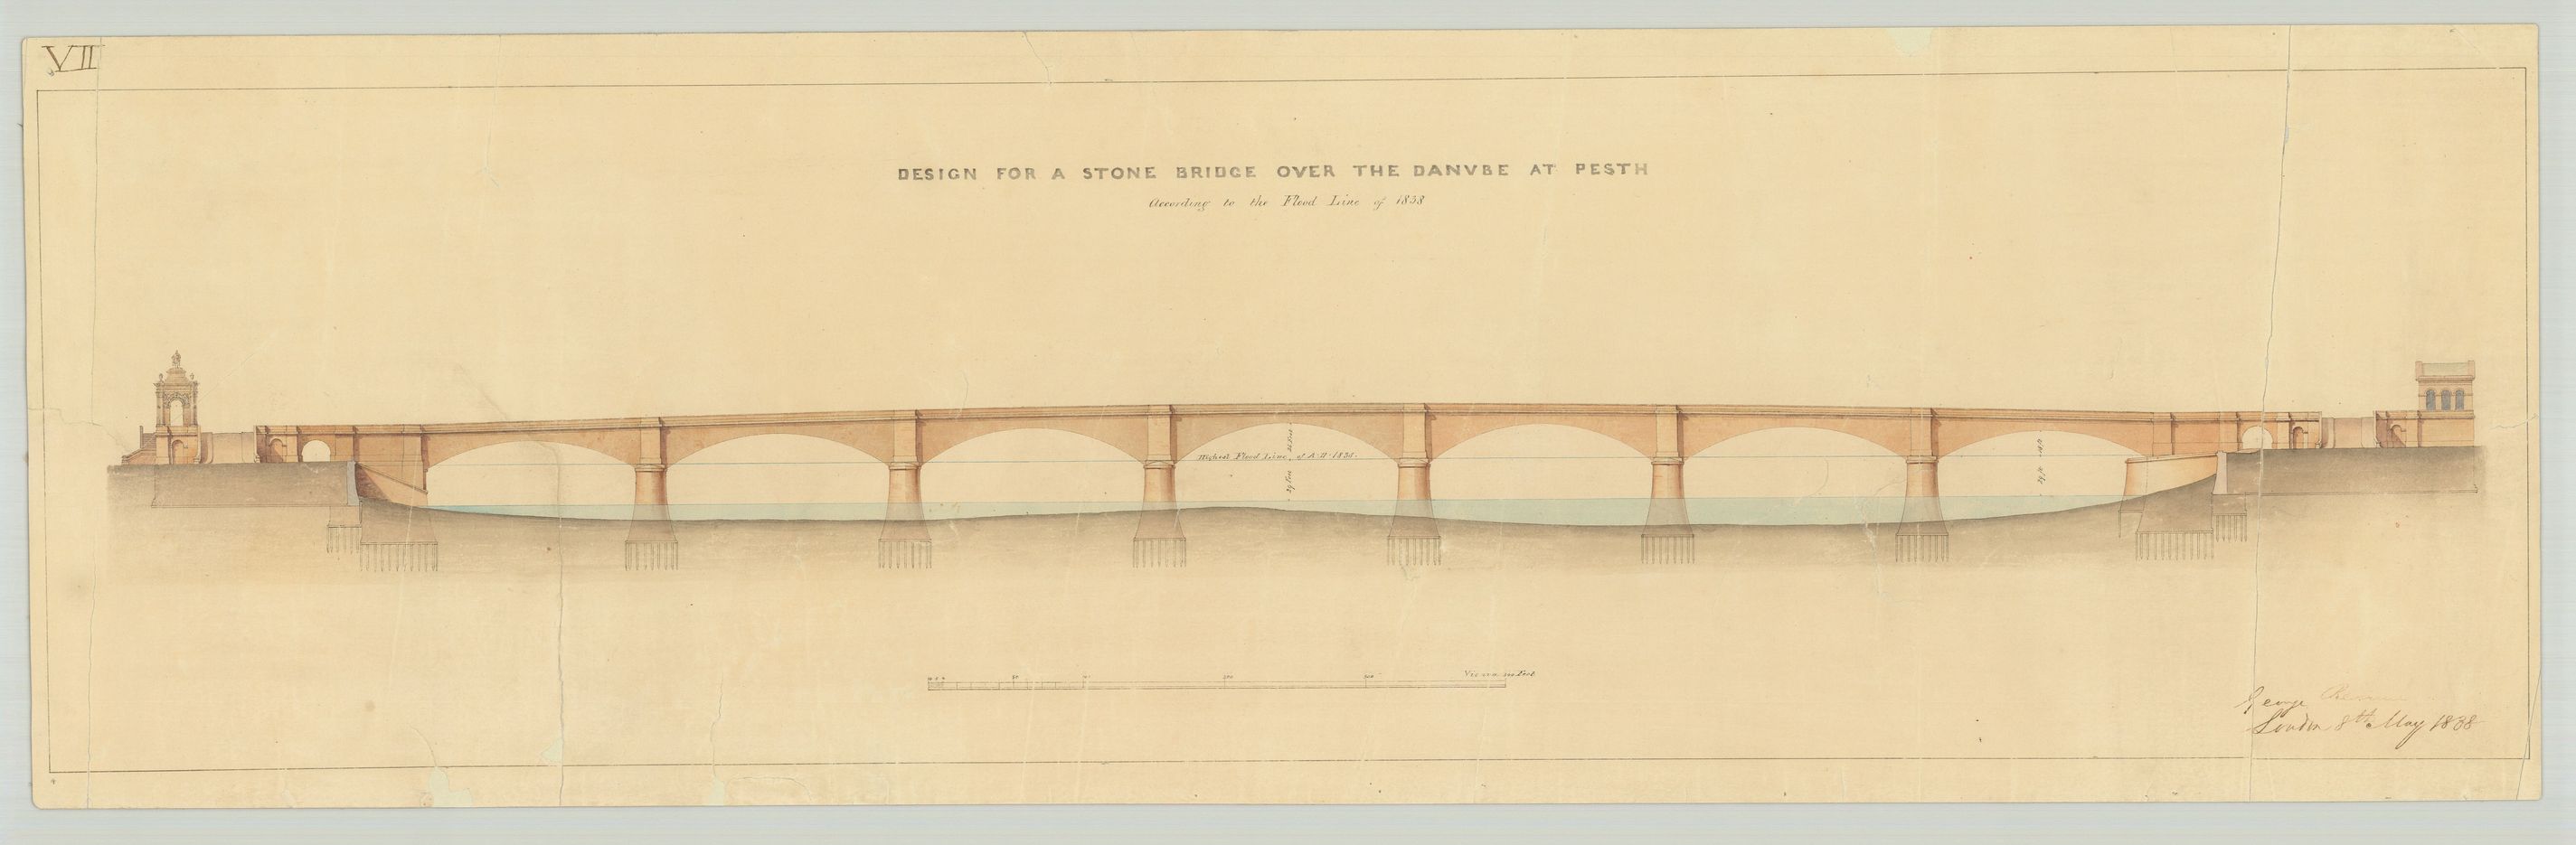 George Rennie brit mérnök három terve a Pest és Buda között emelendő állandó hídra: kőhíd, két-, illetve hárompilléres lánchíd, 1838, (MNL OL S70 No. 185/1-3) 